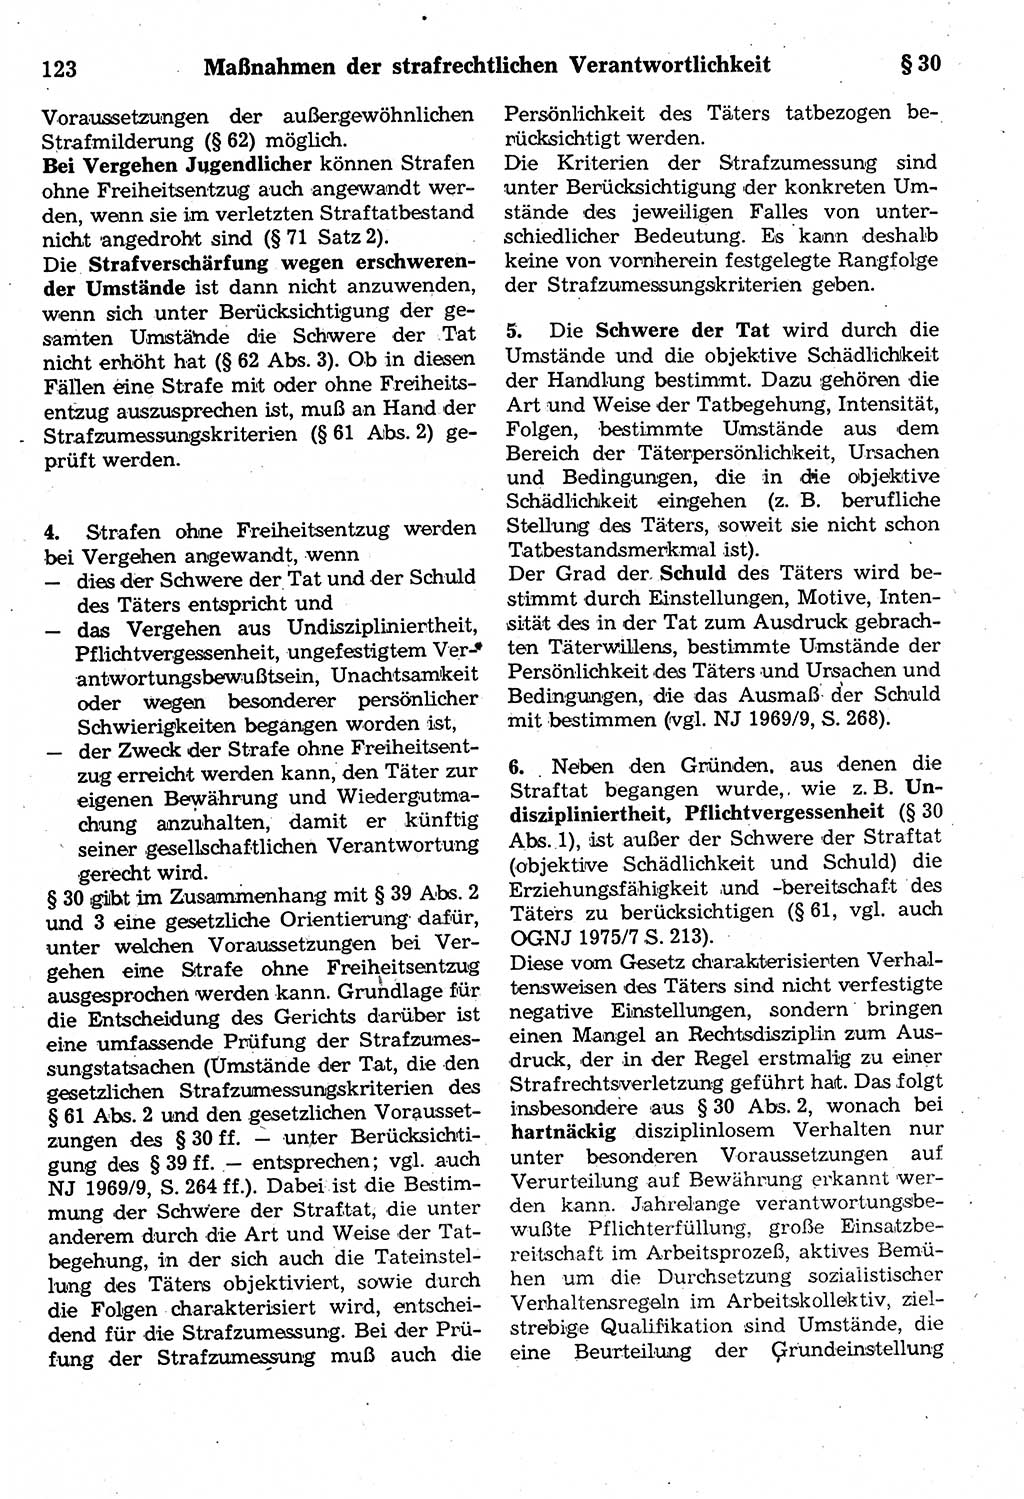 Strafrecht der Deutschen Demokratischen Republik (DDR), Kommentar zum Strafgesetzbuch (StGB) 1987, Seite 123 (Strafr. DDR Komm. StGB 1987, S. 123)